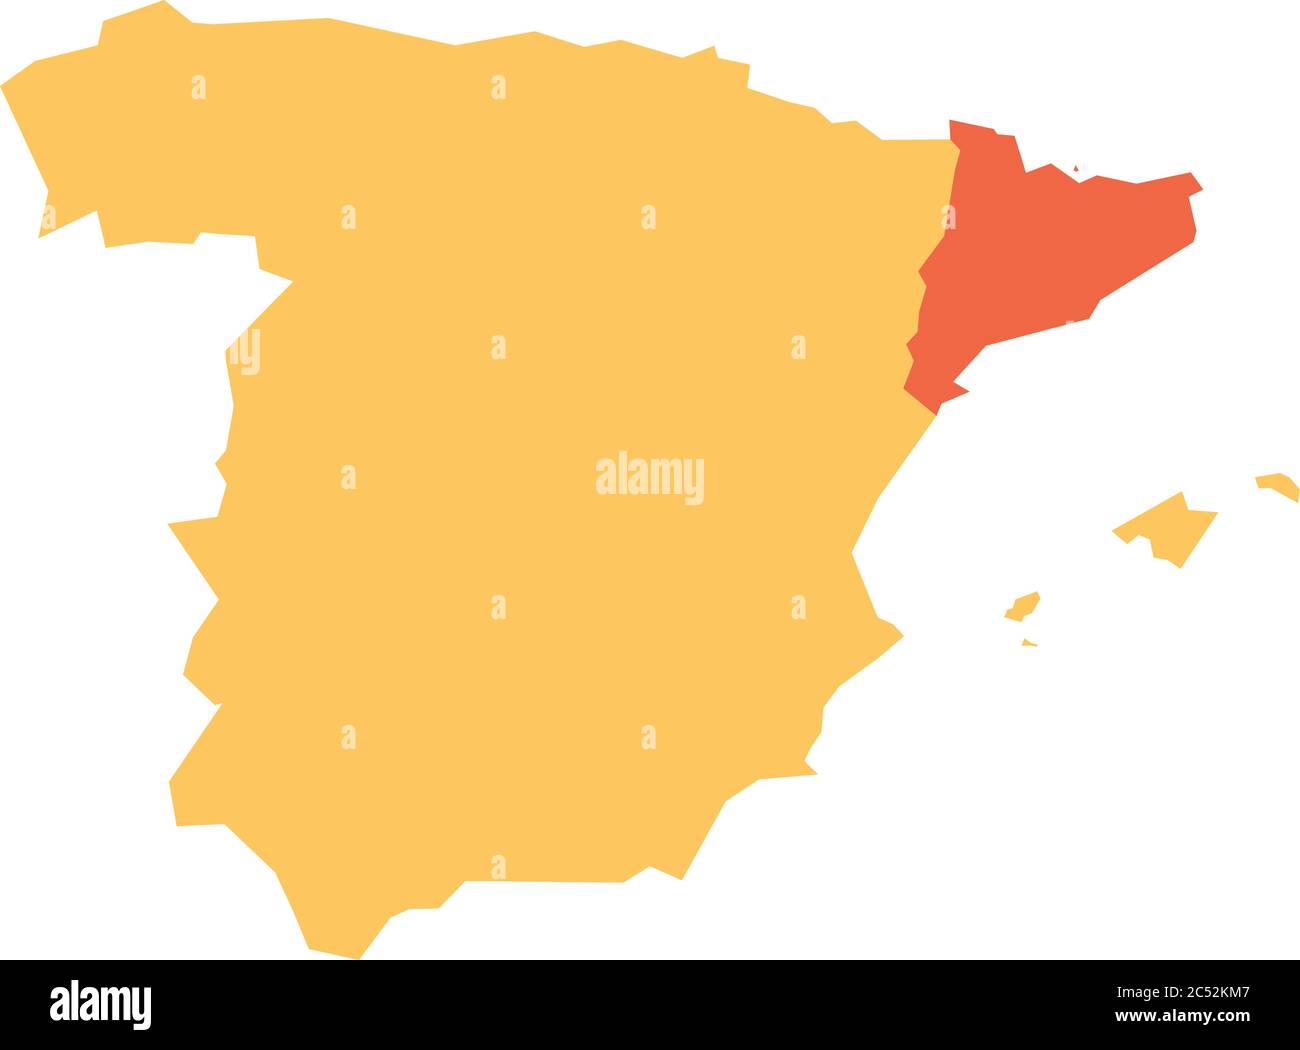 Gelbe Silhouette Karte von Spanien mit rot hervorgehobenen Katalonien Region. Einfache flache Vektordarstellung. Stock Vektor